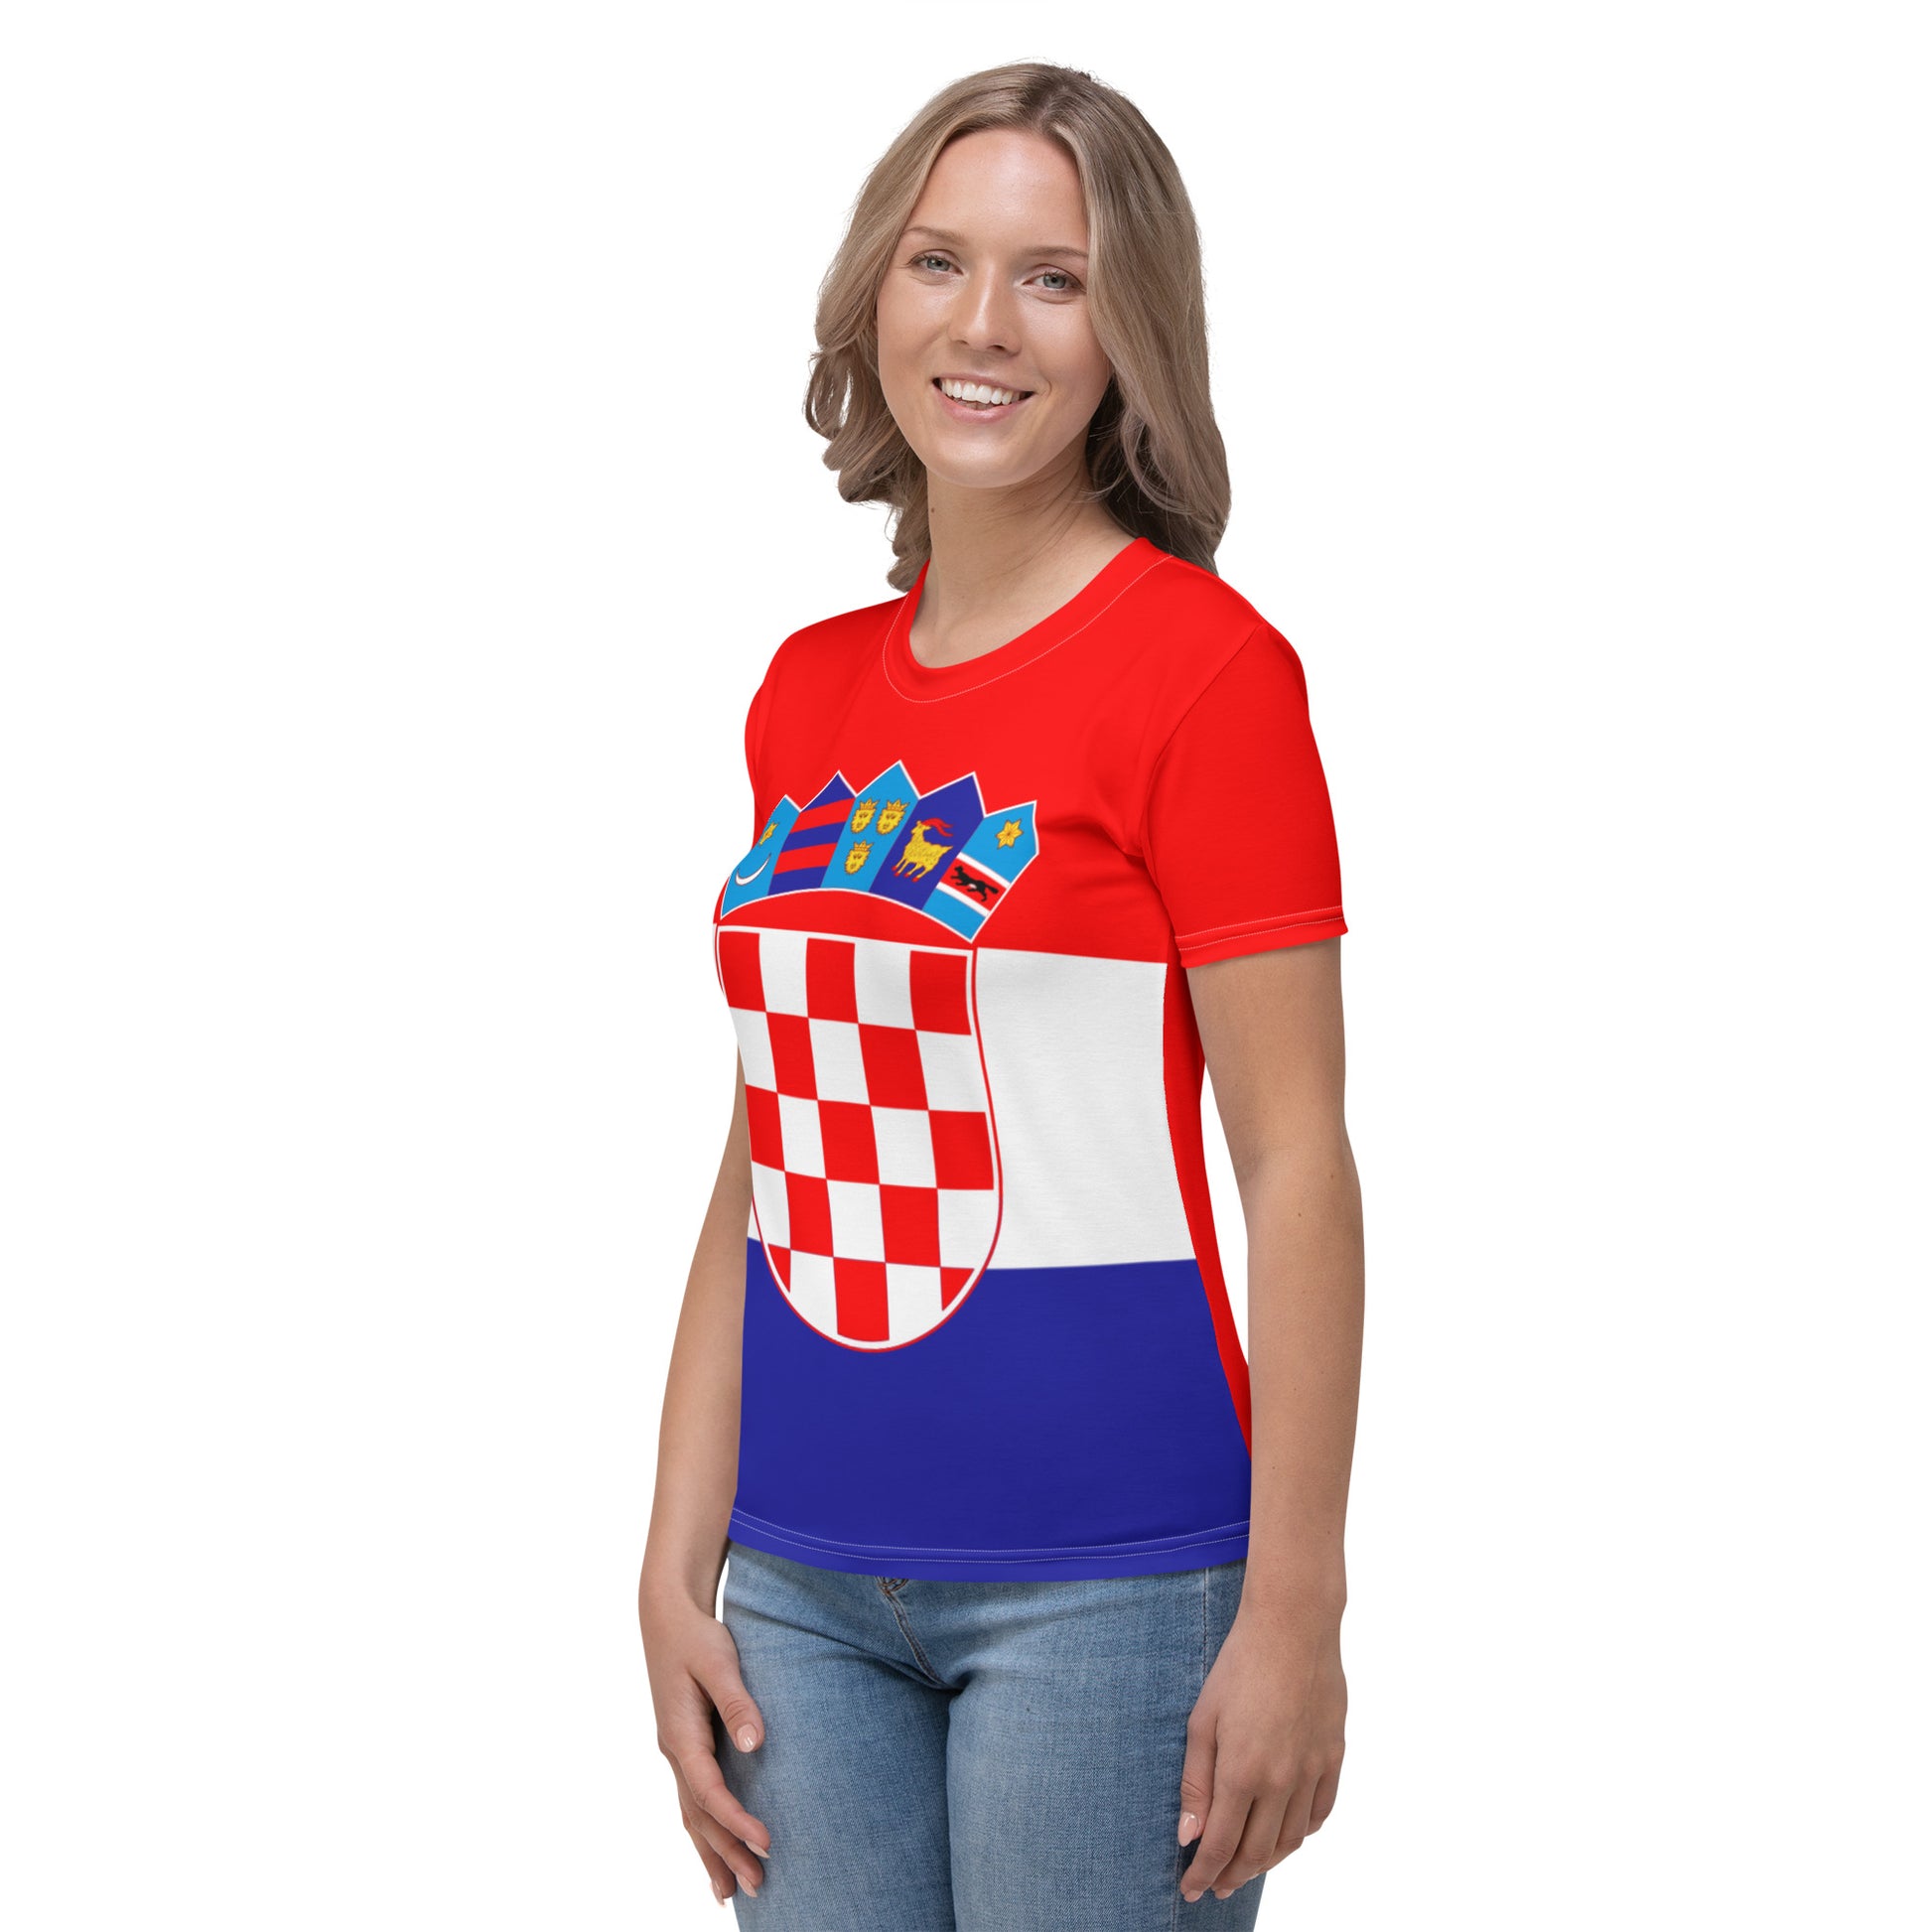 Croatian Flag Shirt / Croatia Style Clothing For WomenCroatian Flag Shirt / Croatia Style Clothing For Women